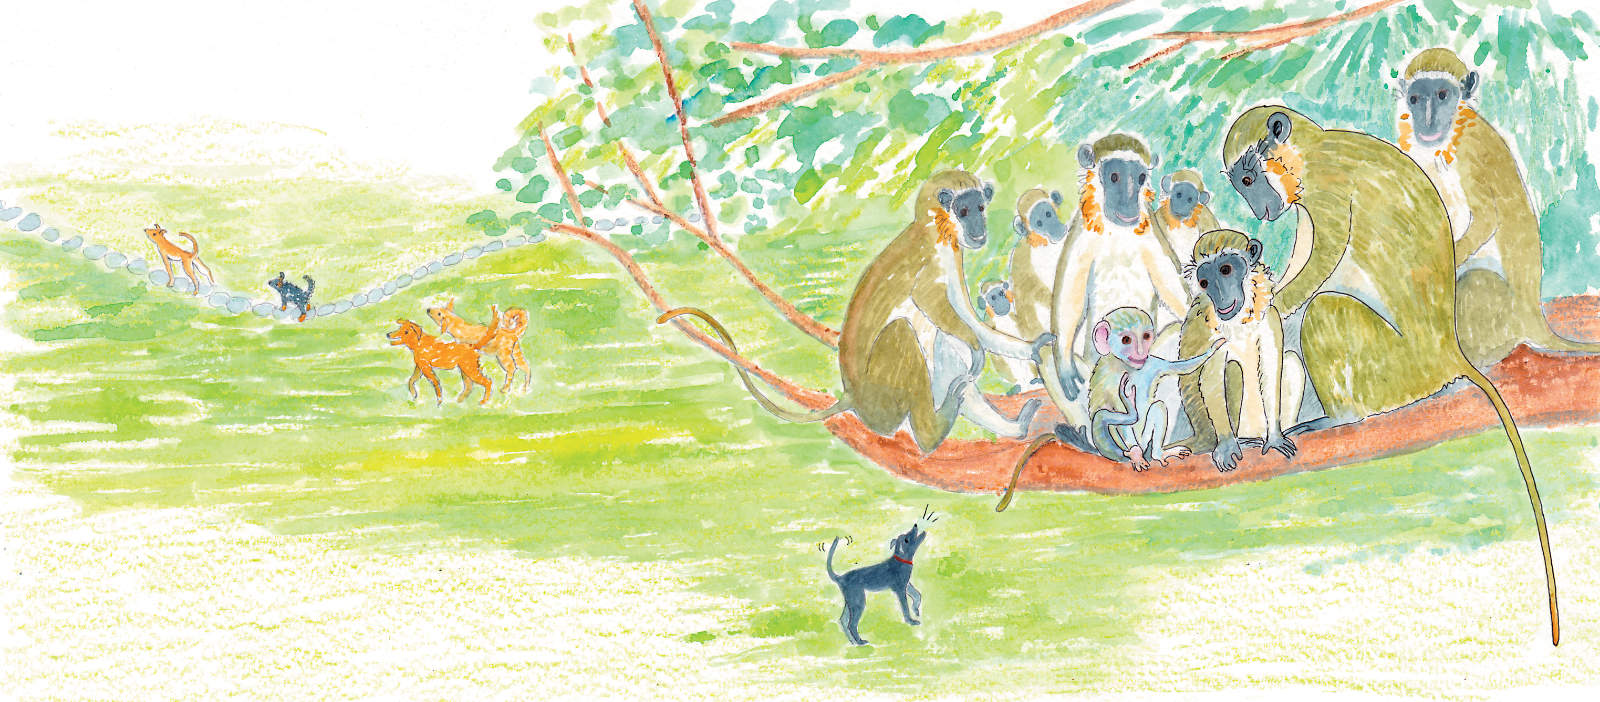 Monkeys with dogs below